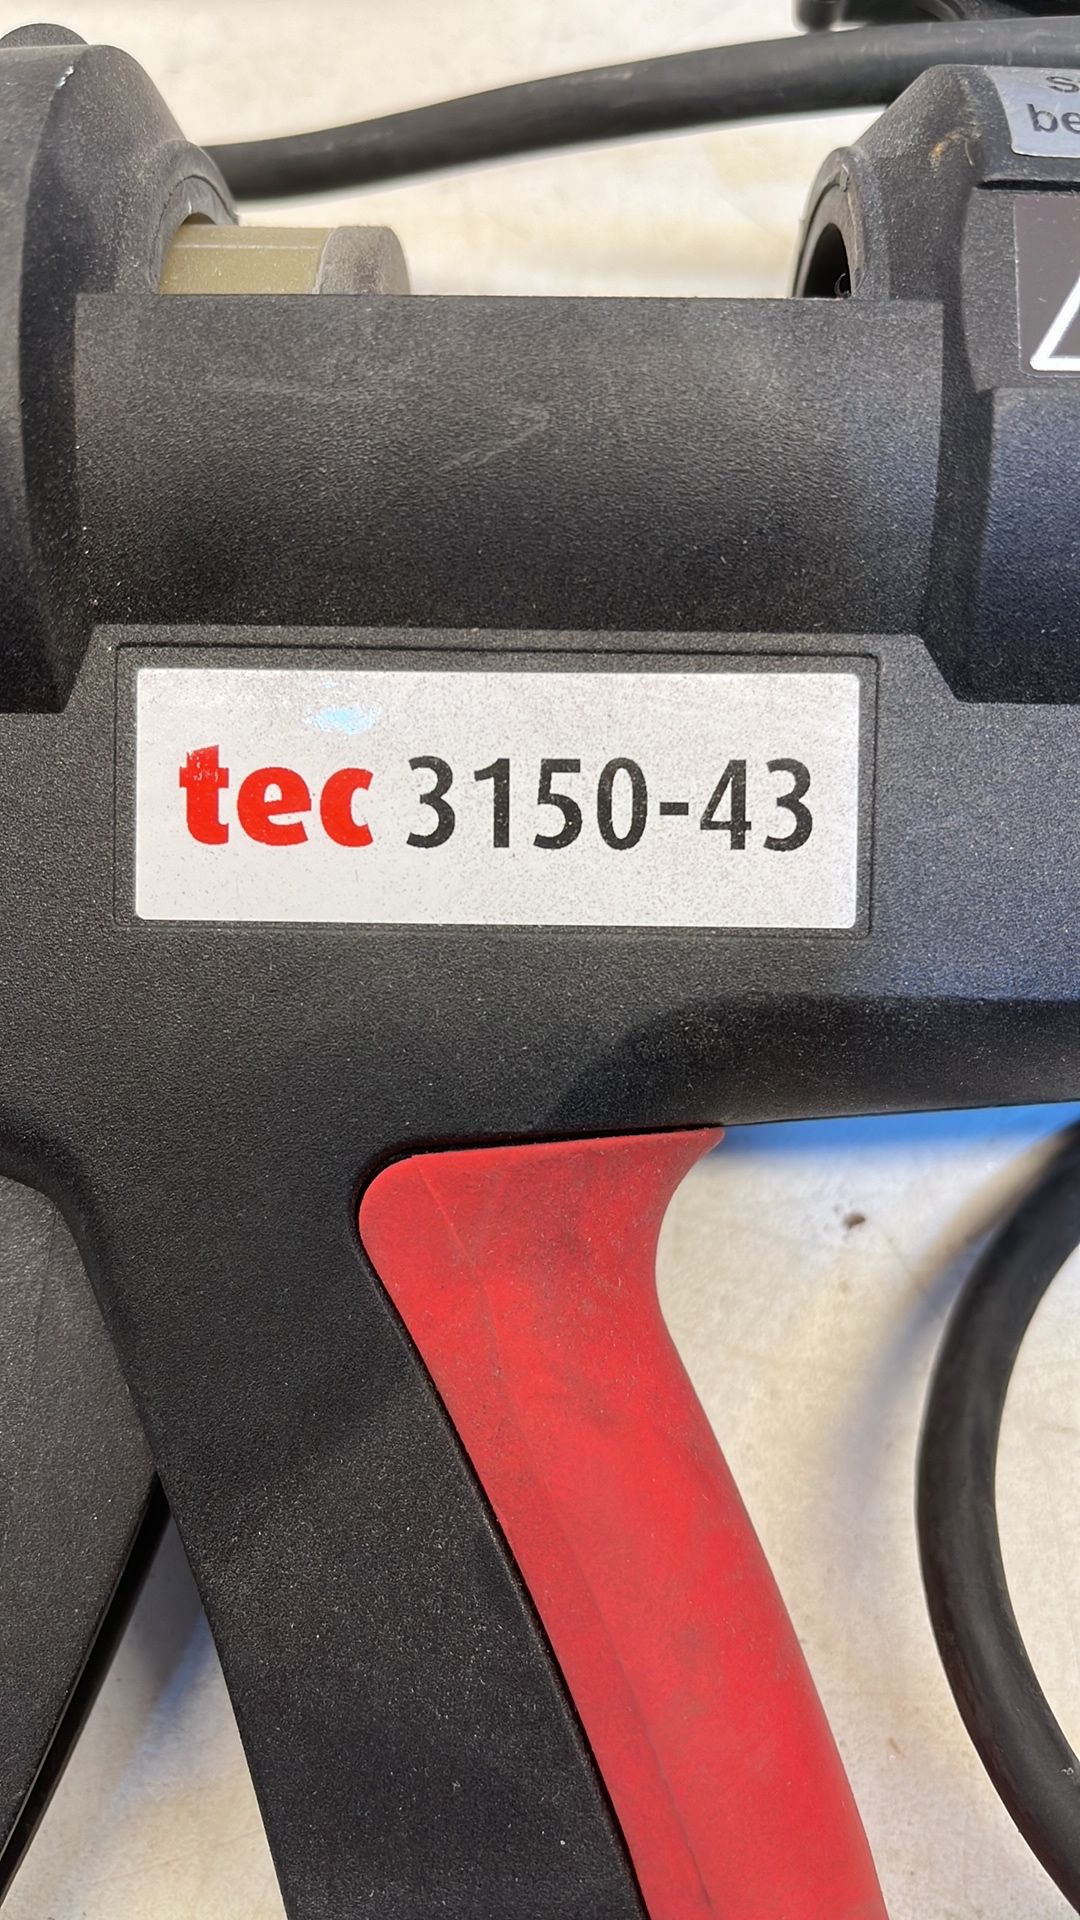 Tec 315-43 Glue Gun - Image 3 of 3